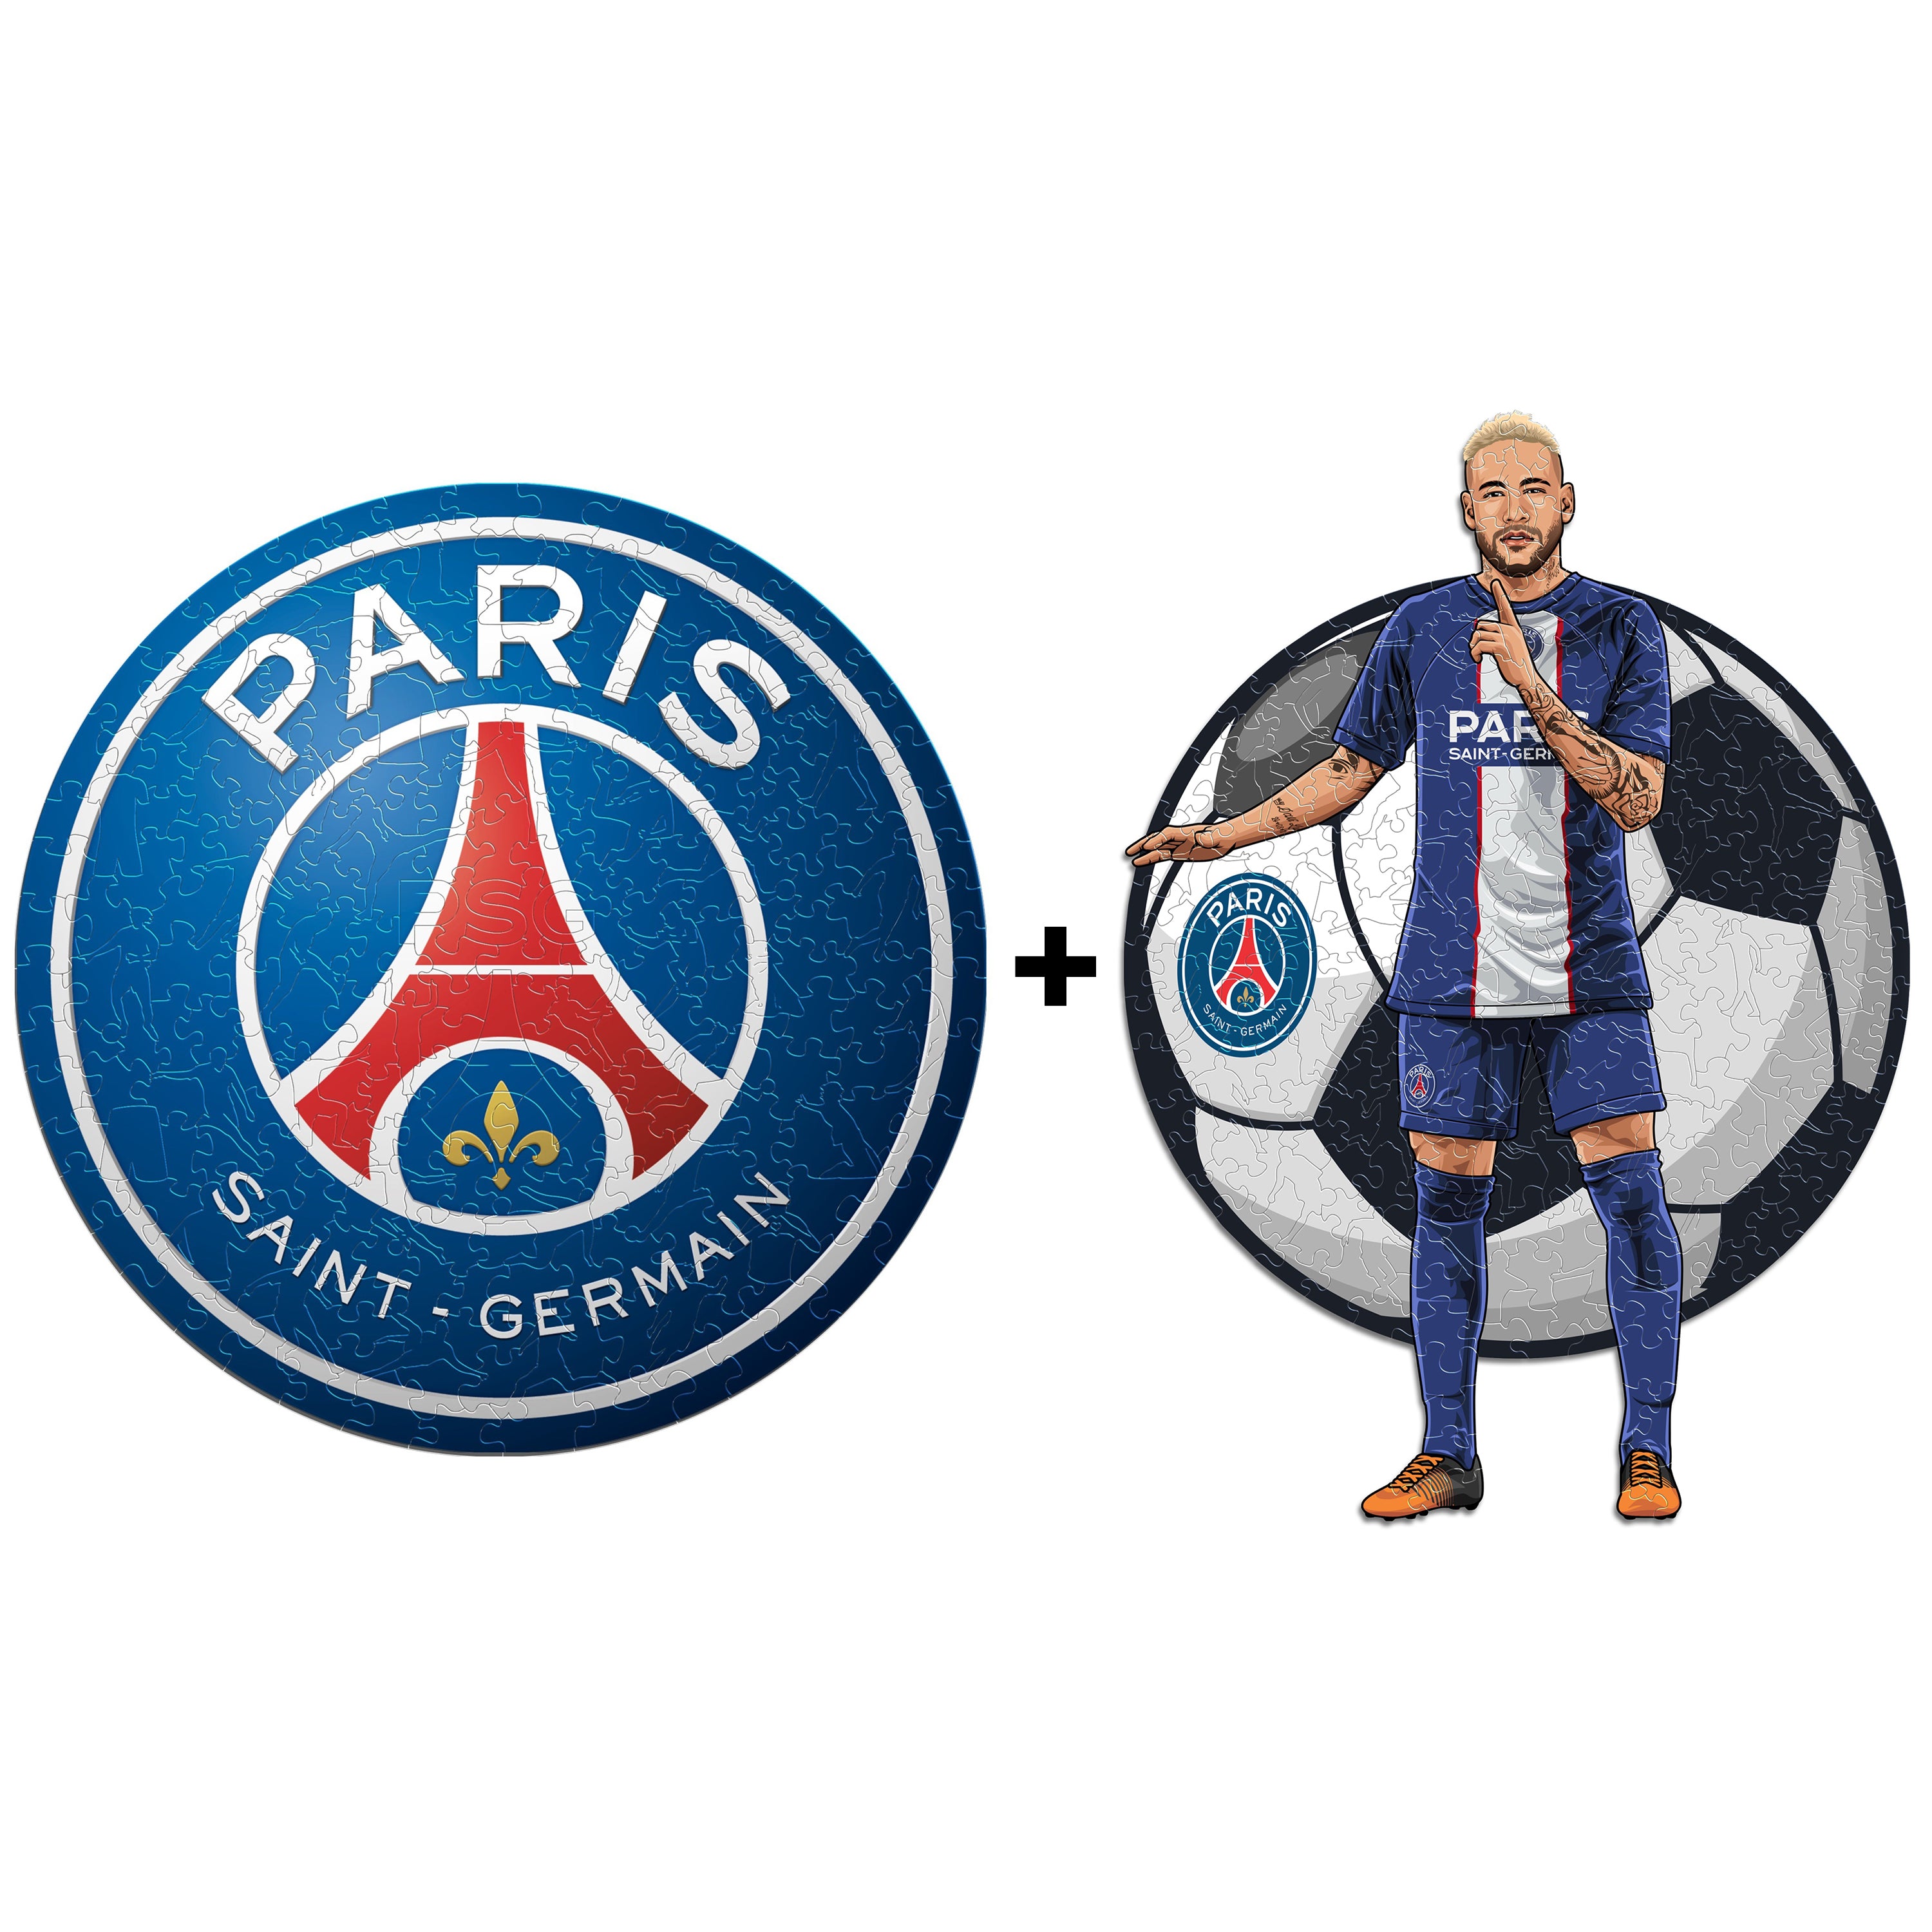 Paris Saint-Germain F.C. Official Sticker Sheet - Maccabi Art